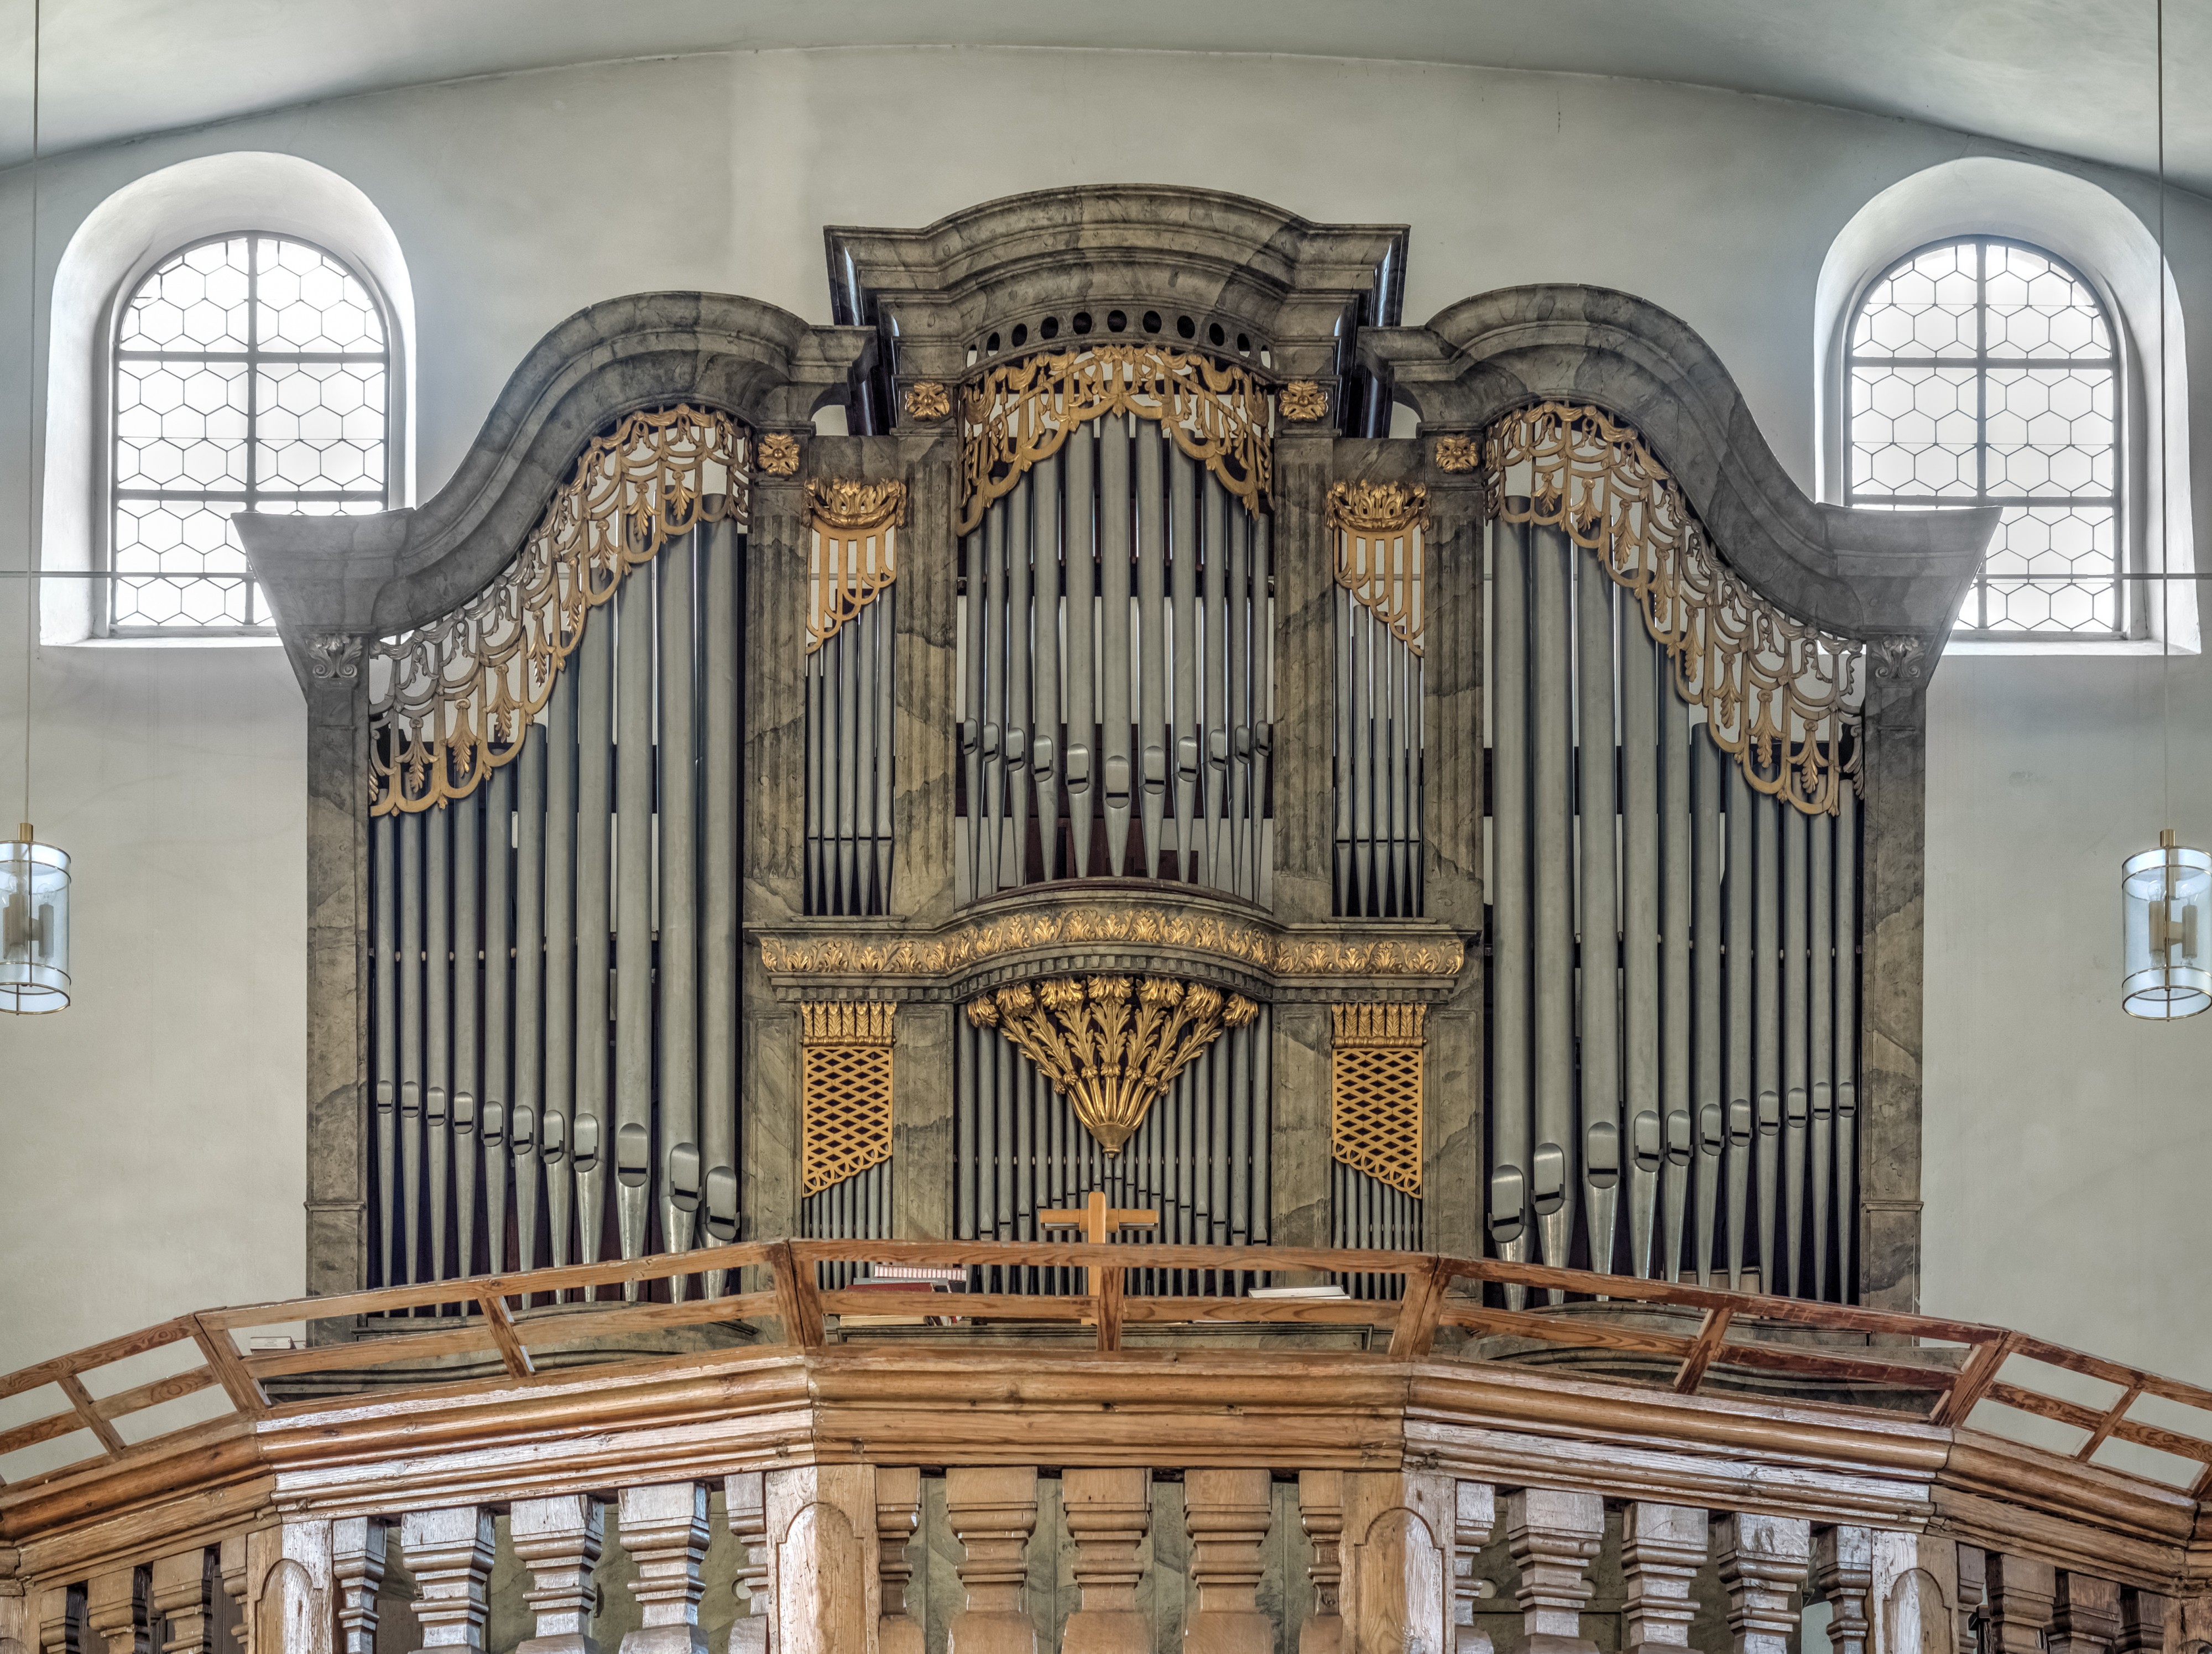 Stettfeld church pipe organ P4RM2118HDR